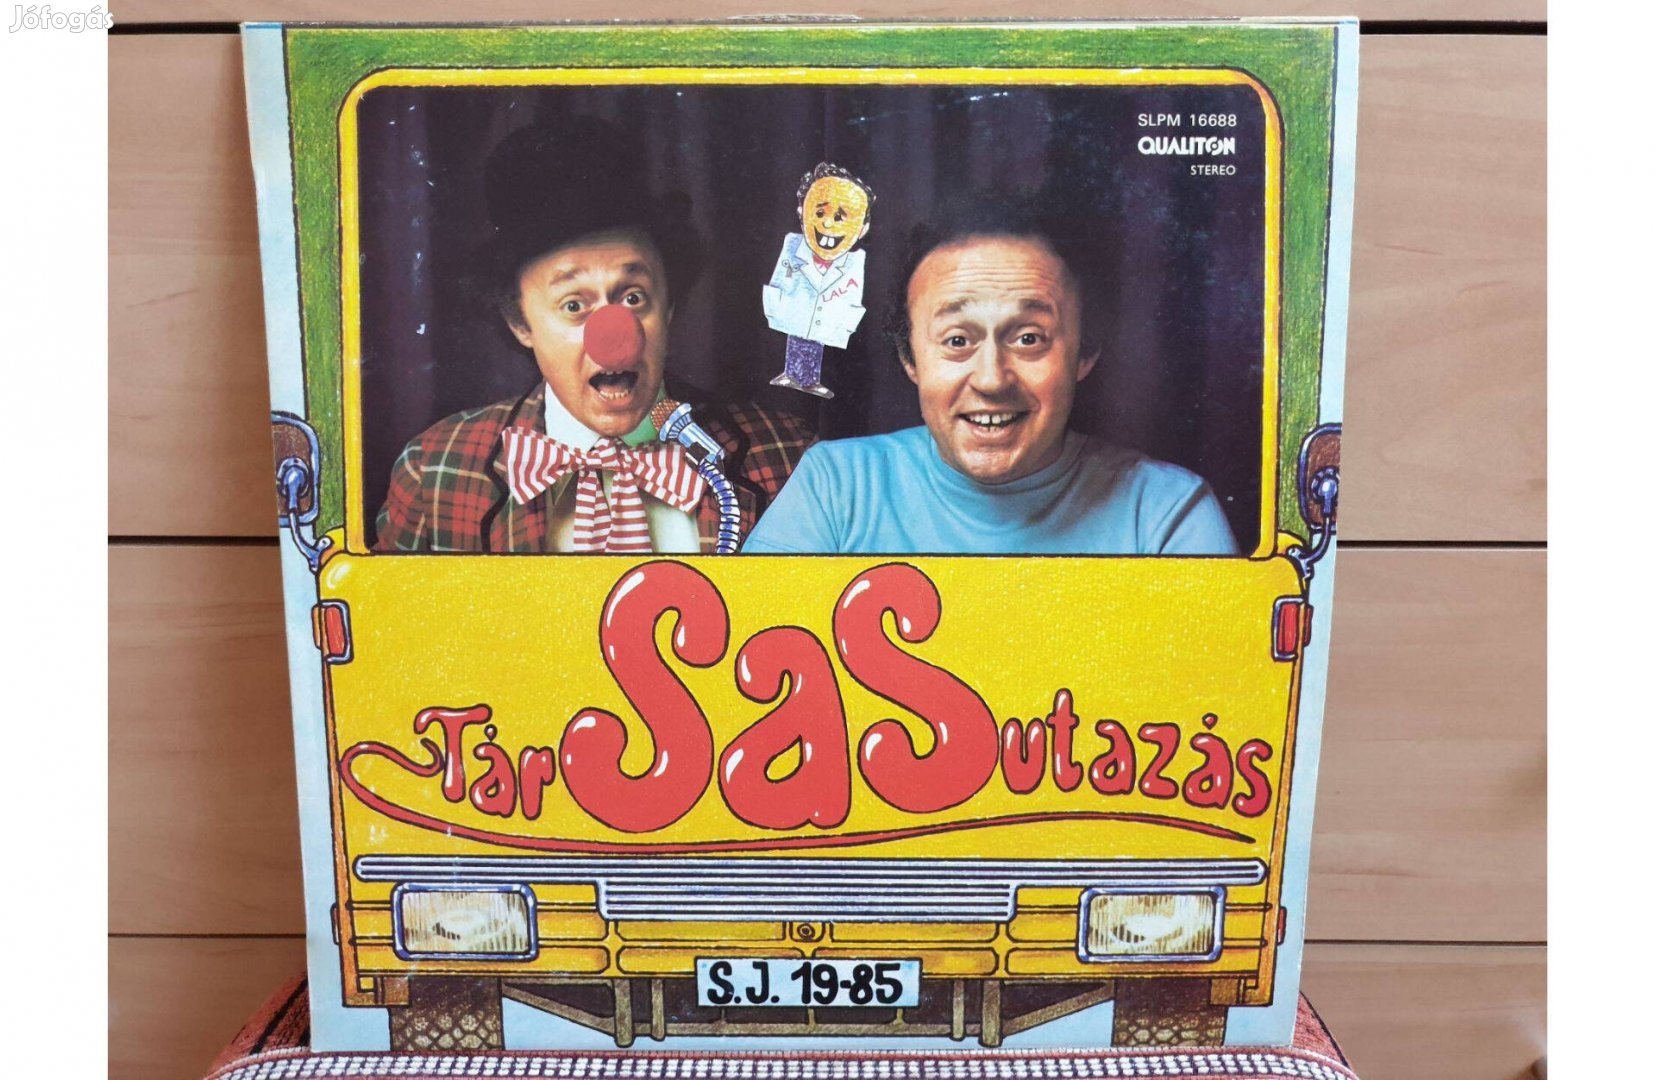 Sas József - Társasutazás hanglemez bakelit lemez Vinyl